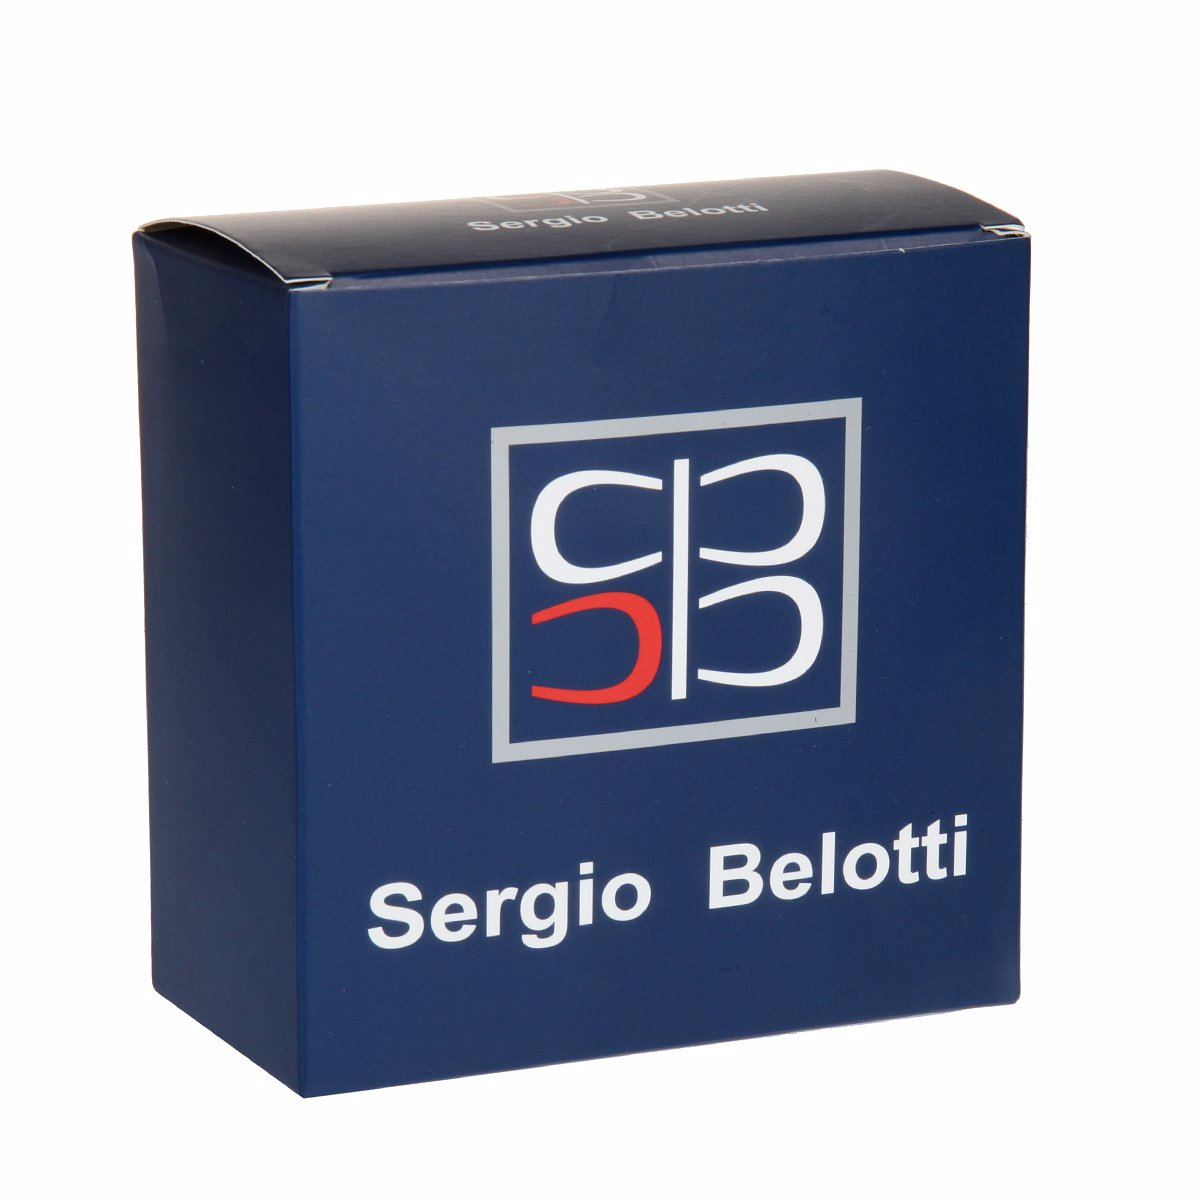 Ремень
Sergio Belotti
6095/35 Blu Ремни и пояса